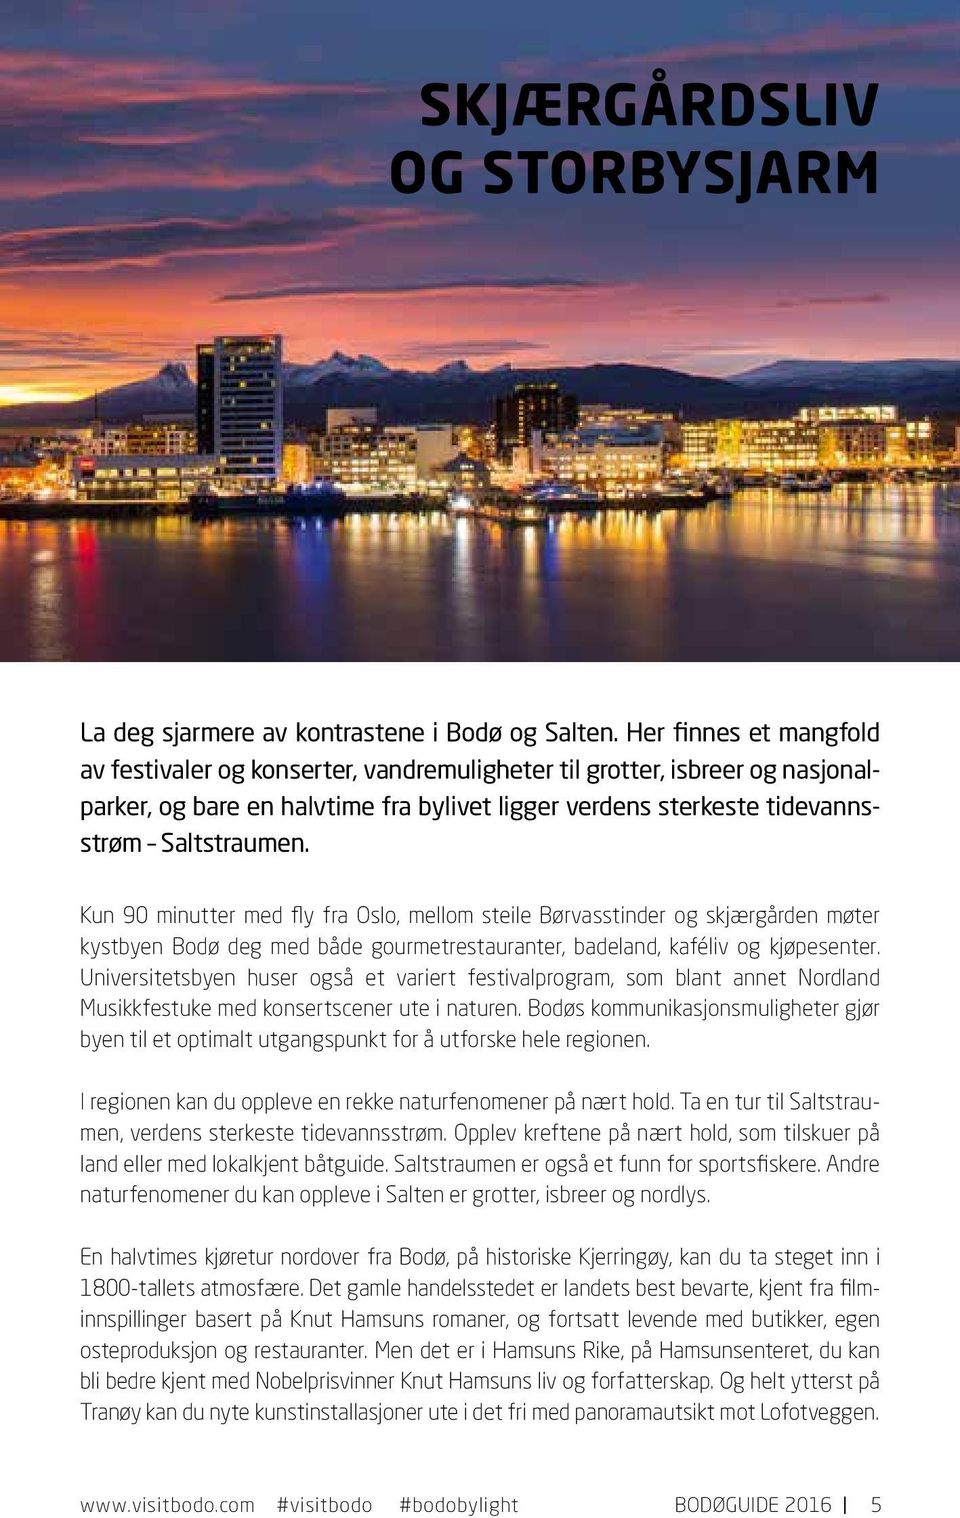 kaféliv og kjøpeseter Uiversitetsbye huser også et variert festivalprogram, som blat aet Nordlad Musikkfestuke med kosertsceer ute i ature Bodøs kommuikasjos muligheter gjør bye til et optimalt